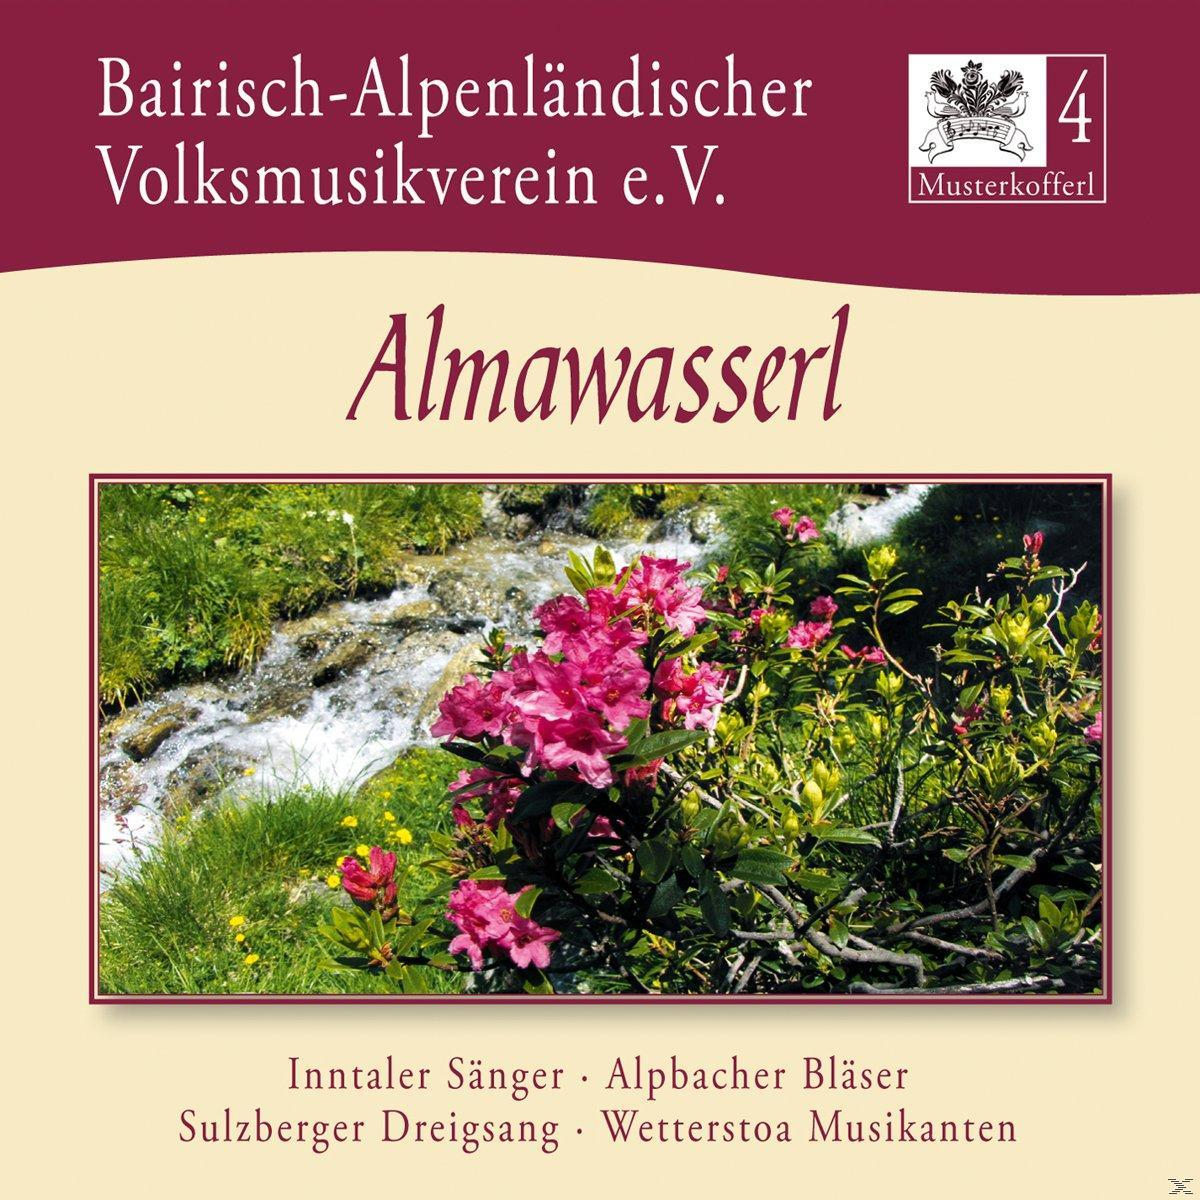 VARIOUS, Bairisch-Alpenländ.Volksmusikverein 4-Almawasserl - (CD) e.V - Musterkofferl